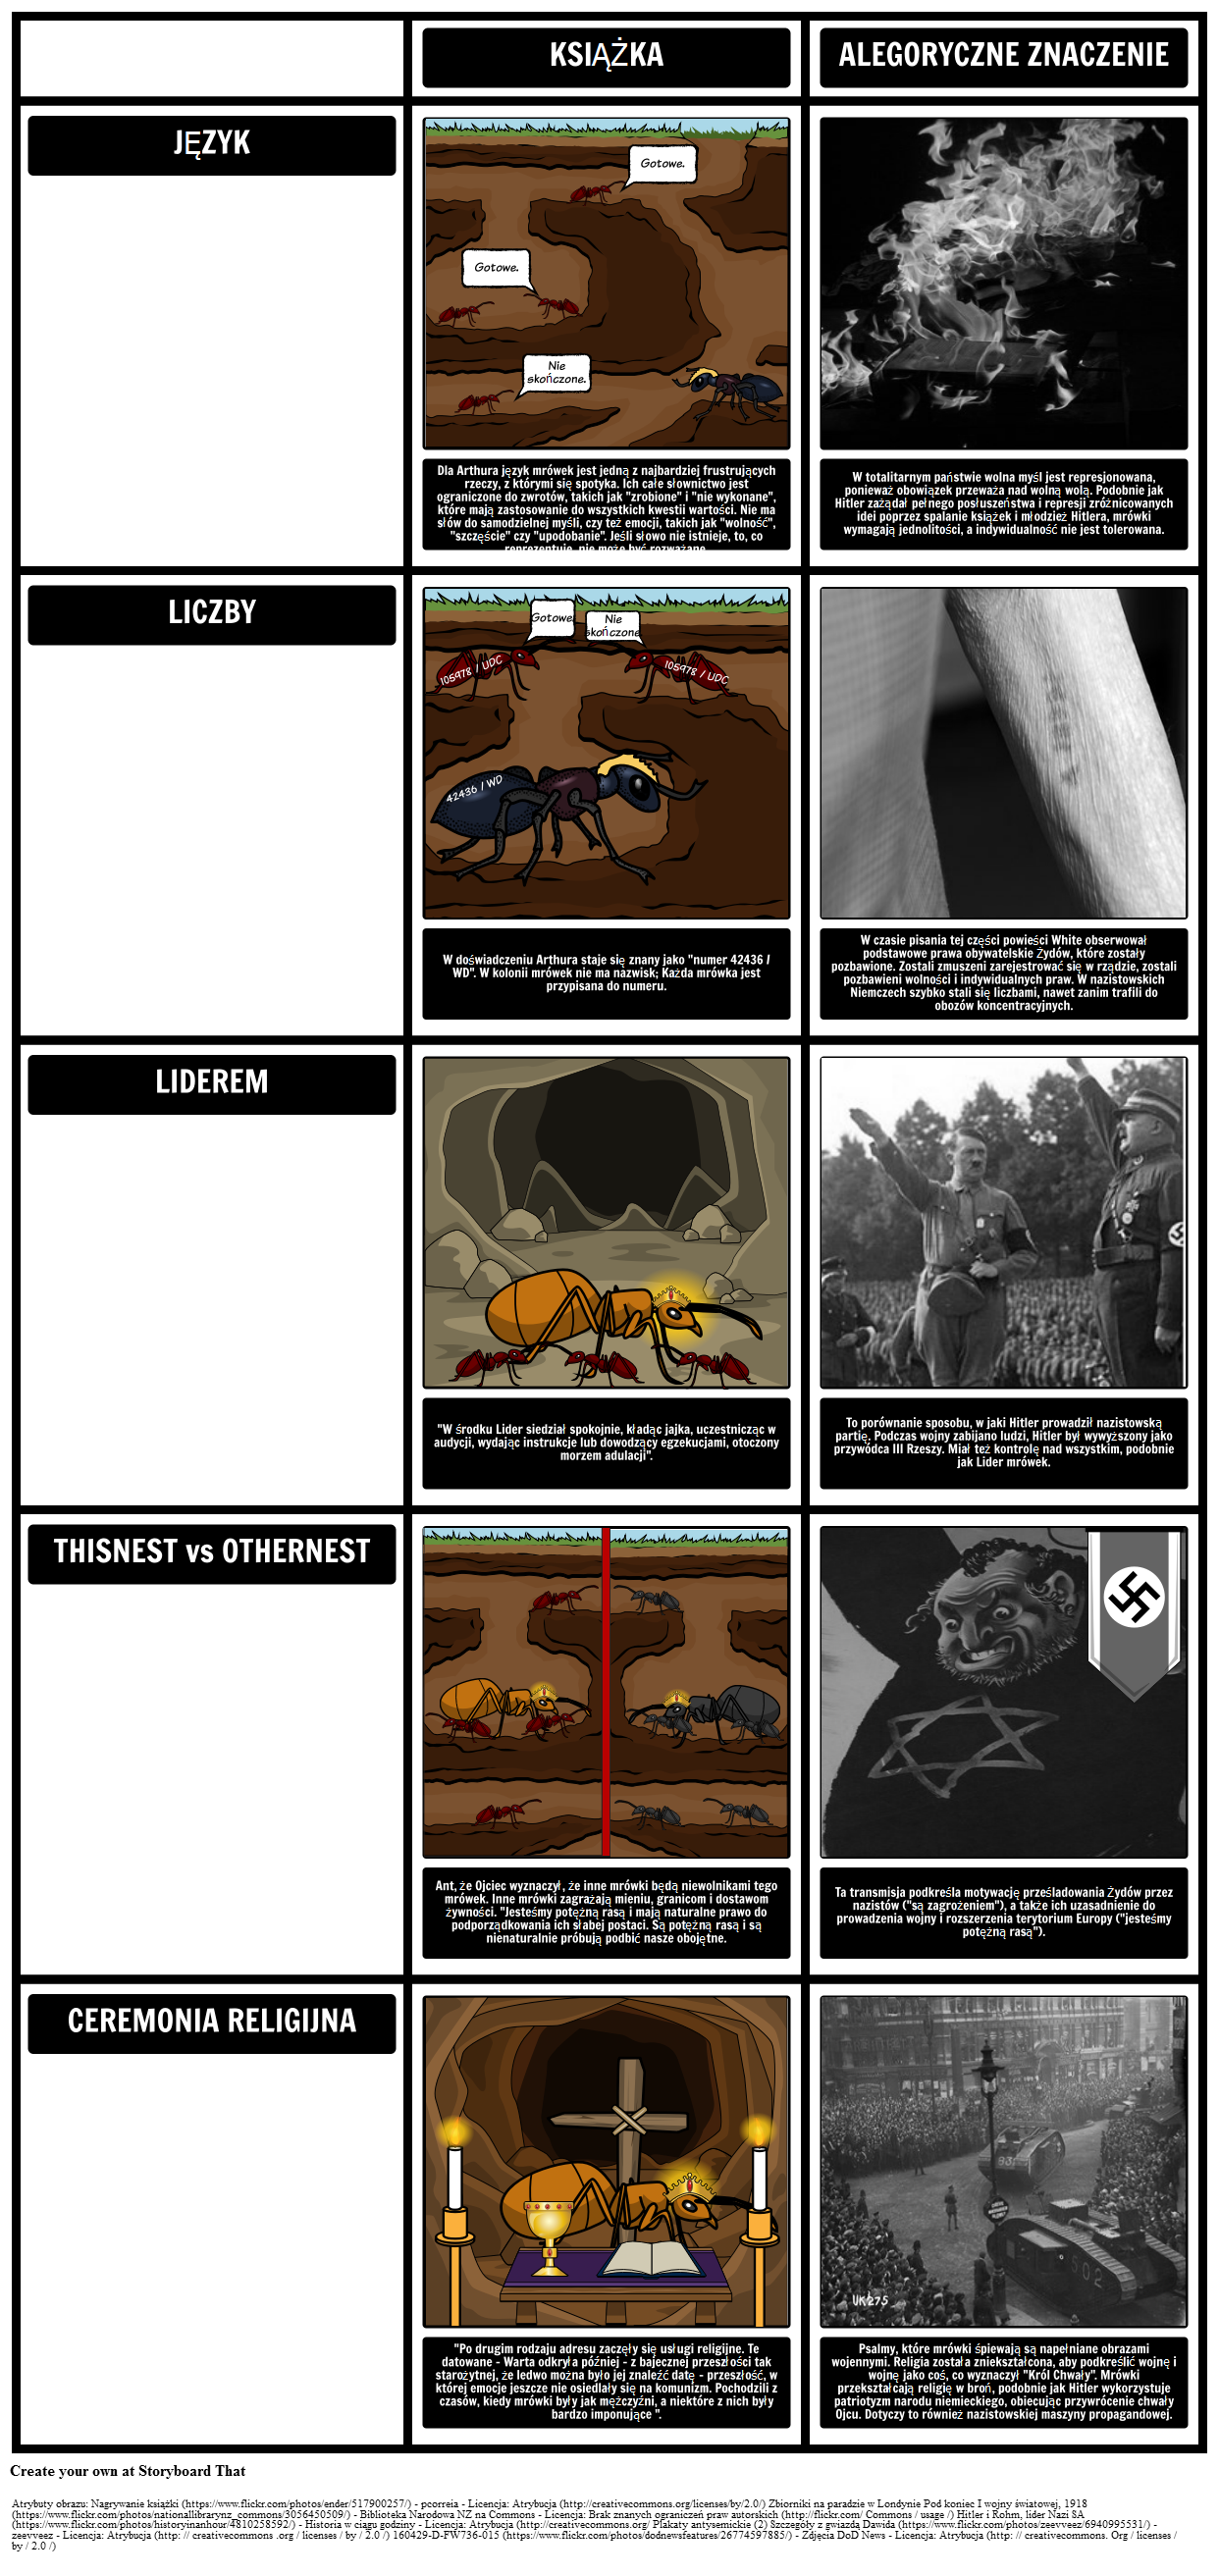 TOAFK - Alegoria w lekcji mrówek w "Mieczu w kamieniu"